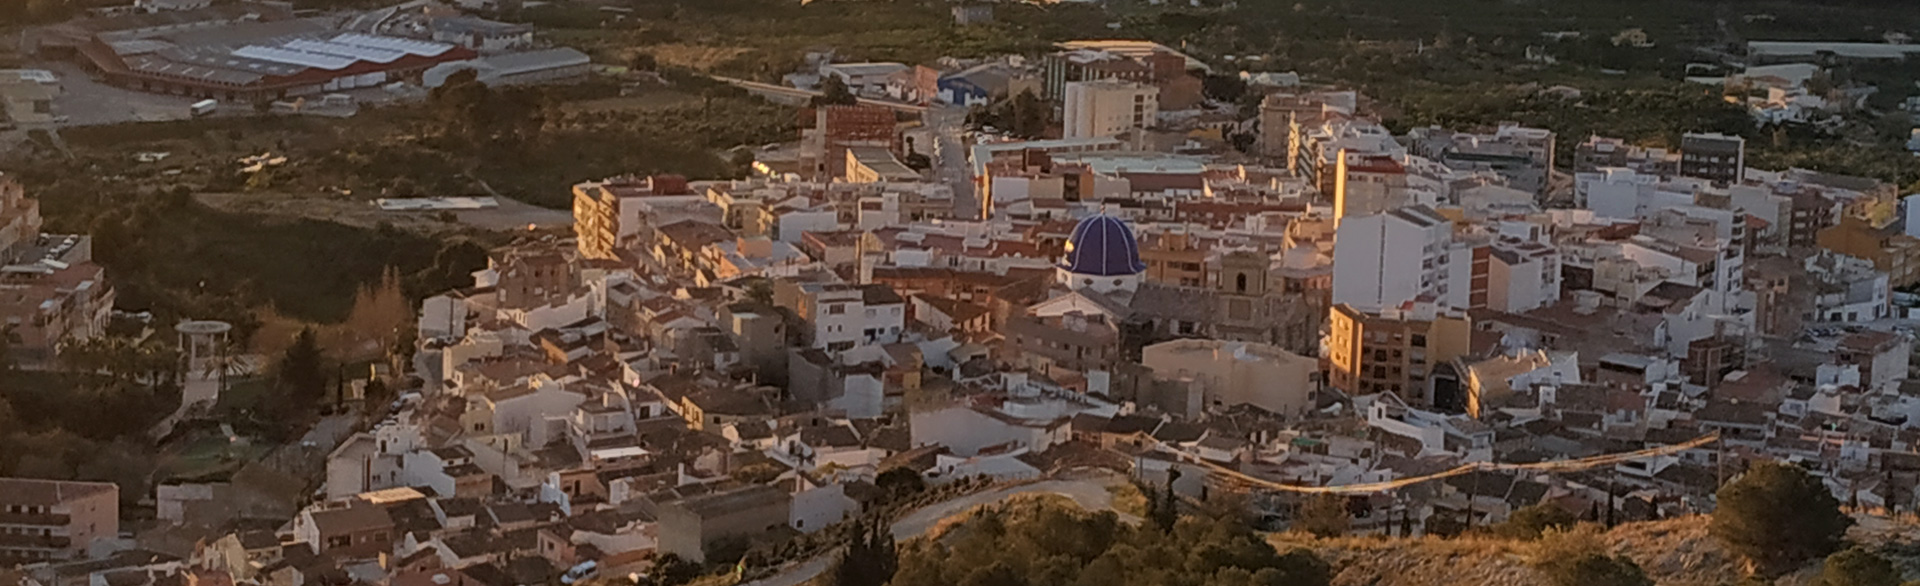 Inmobiliaria en Callosa d’en Sarrià, Antón Inmobiliaria, Gestión de seguros y la gestión integral de fincas